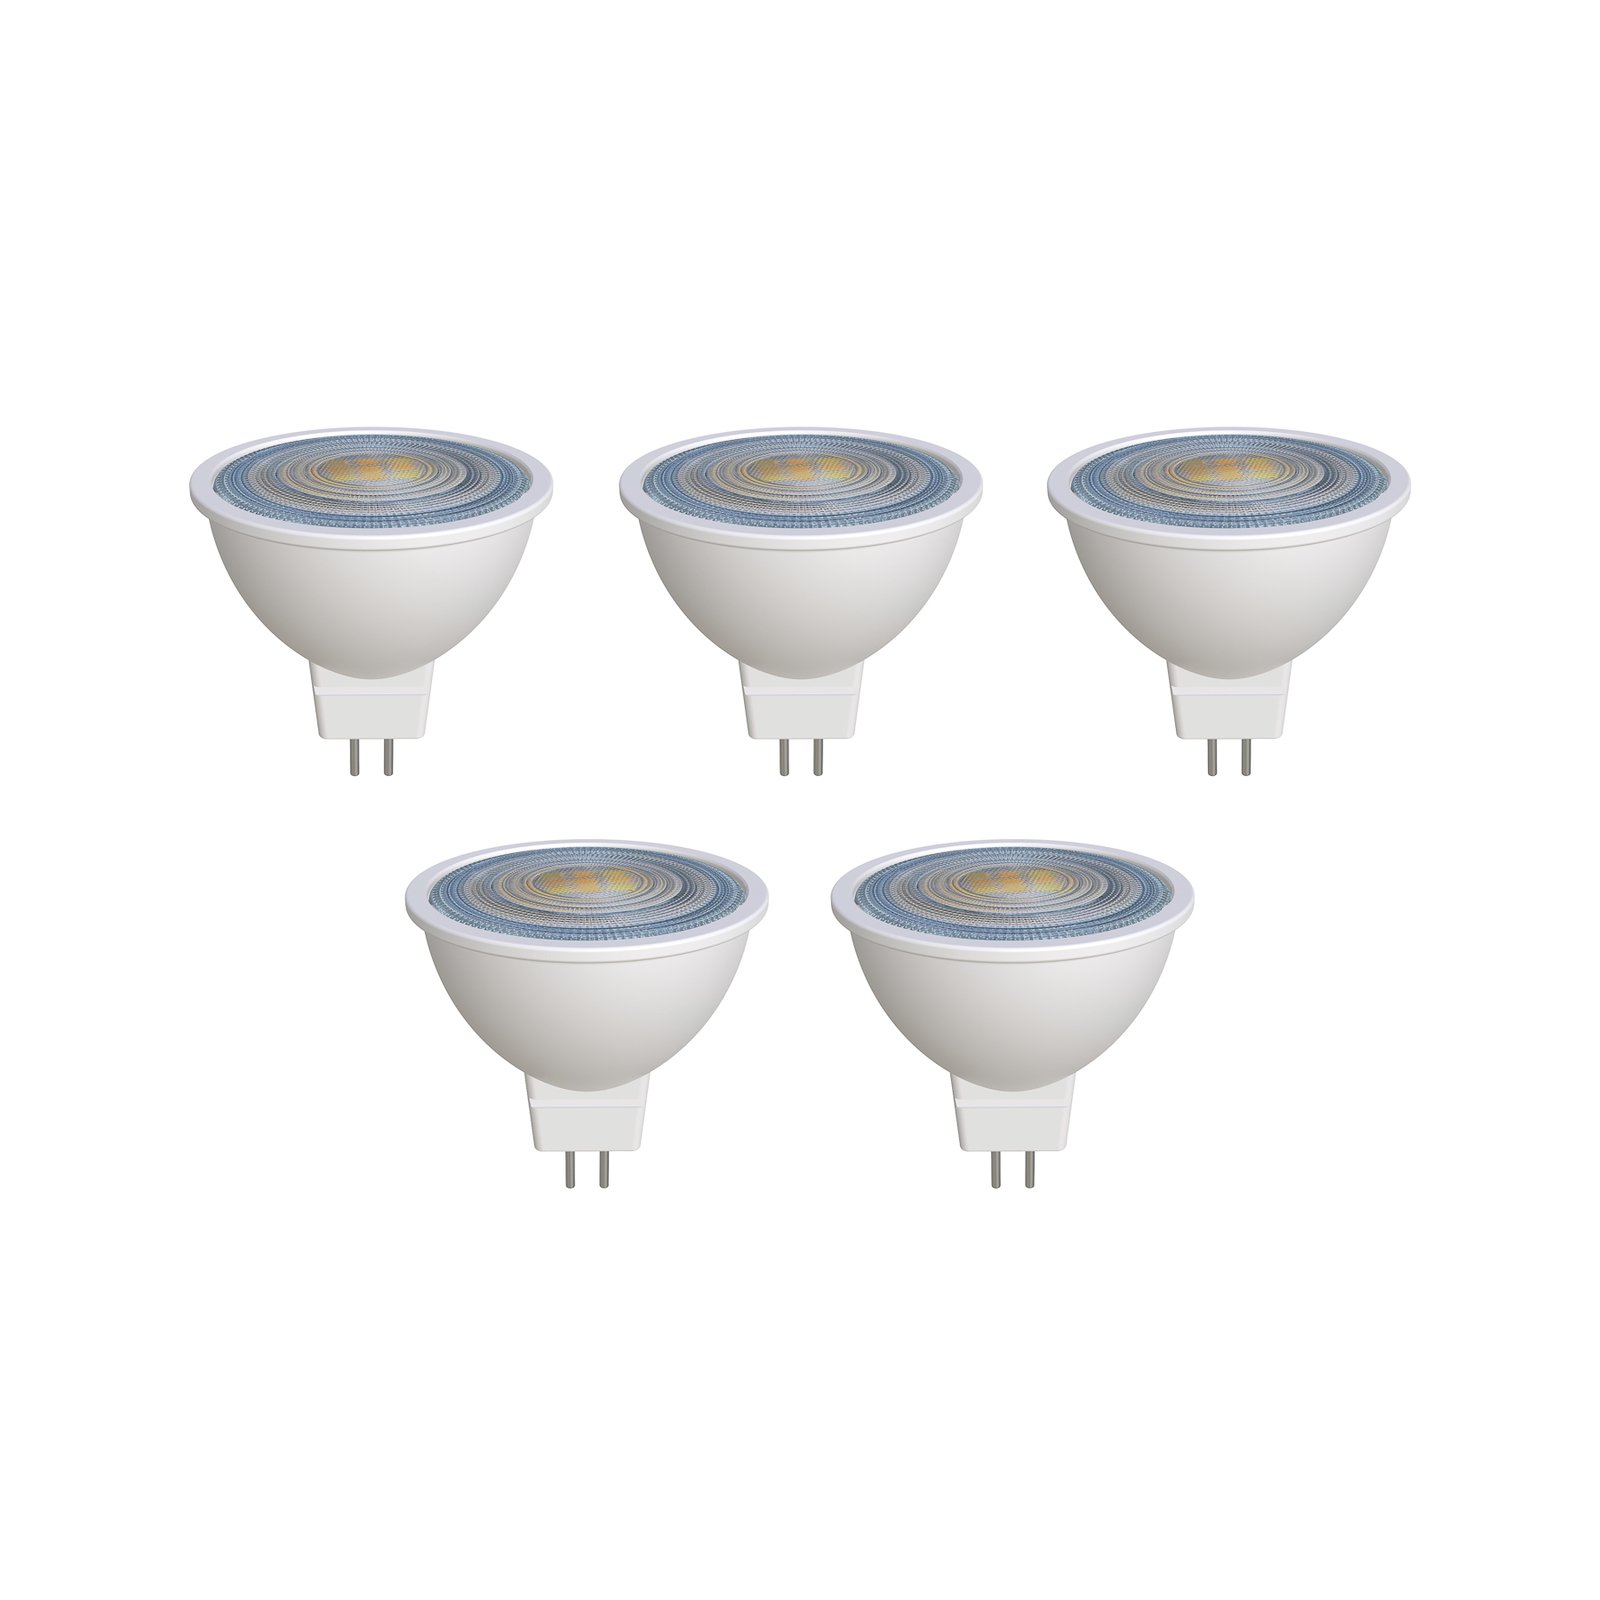 Prios LED reflectorlamp GU5.3 7.5W 621lm 36° wit 840 set van 5